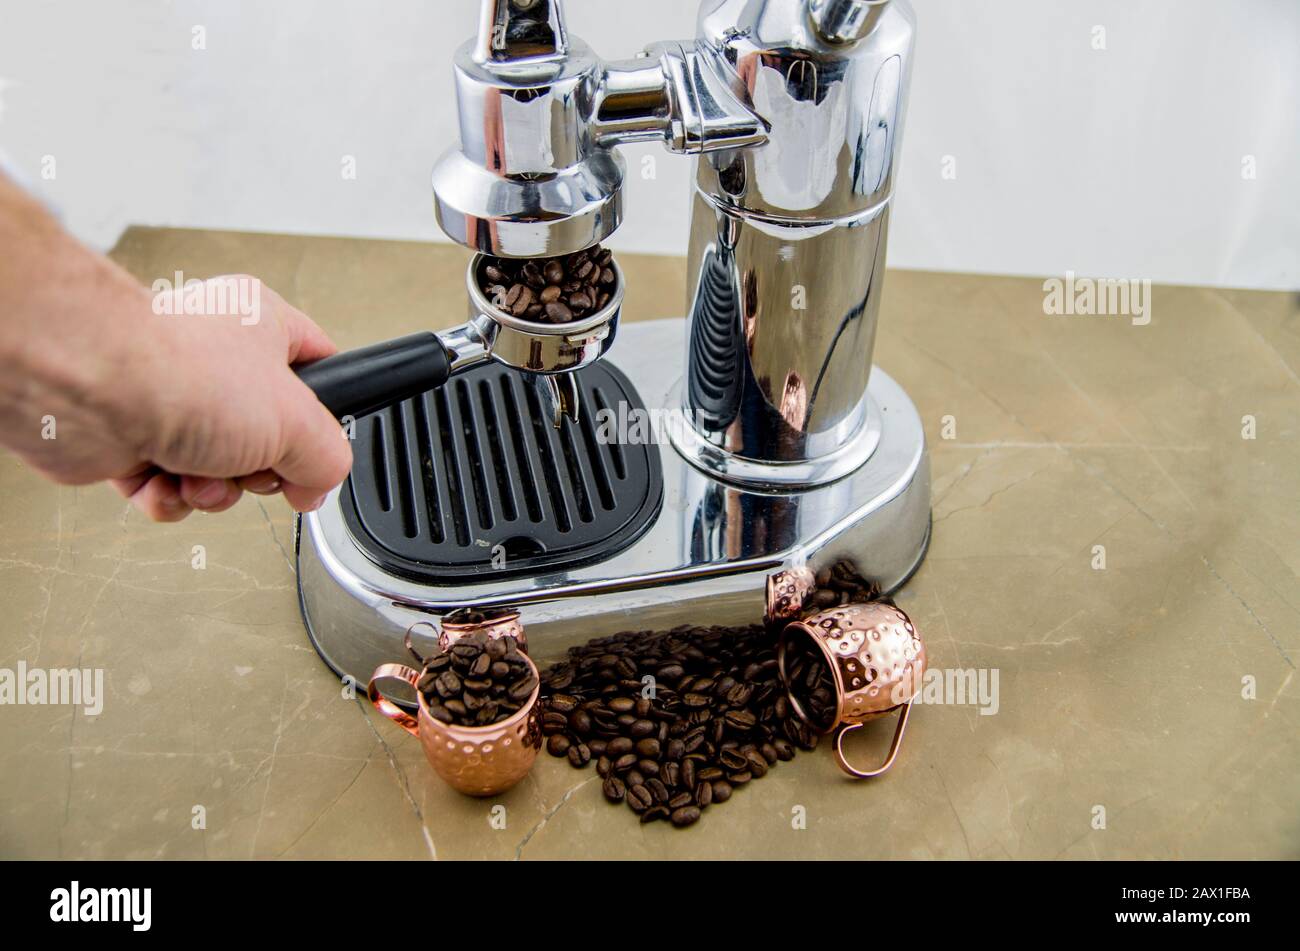 Frisch gerösteter Kaffee in Espresso-Arbeit. Bei der Zubereitung von  Kaffee. Espresso-Kaffeemaschine im Retro-Stil. Kaffeebohnen und  Metallbecher. Kaffee ist ein guter Sta Stockfotografie - Alamy